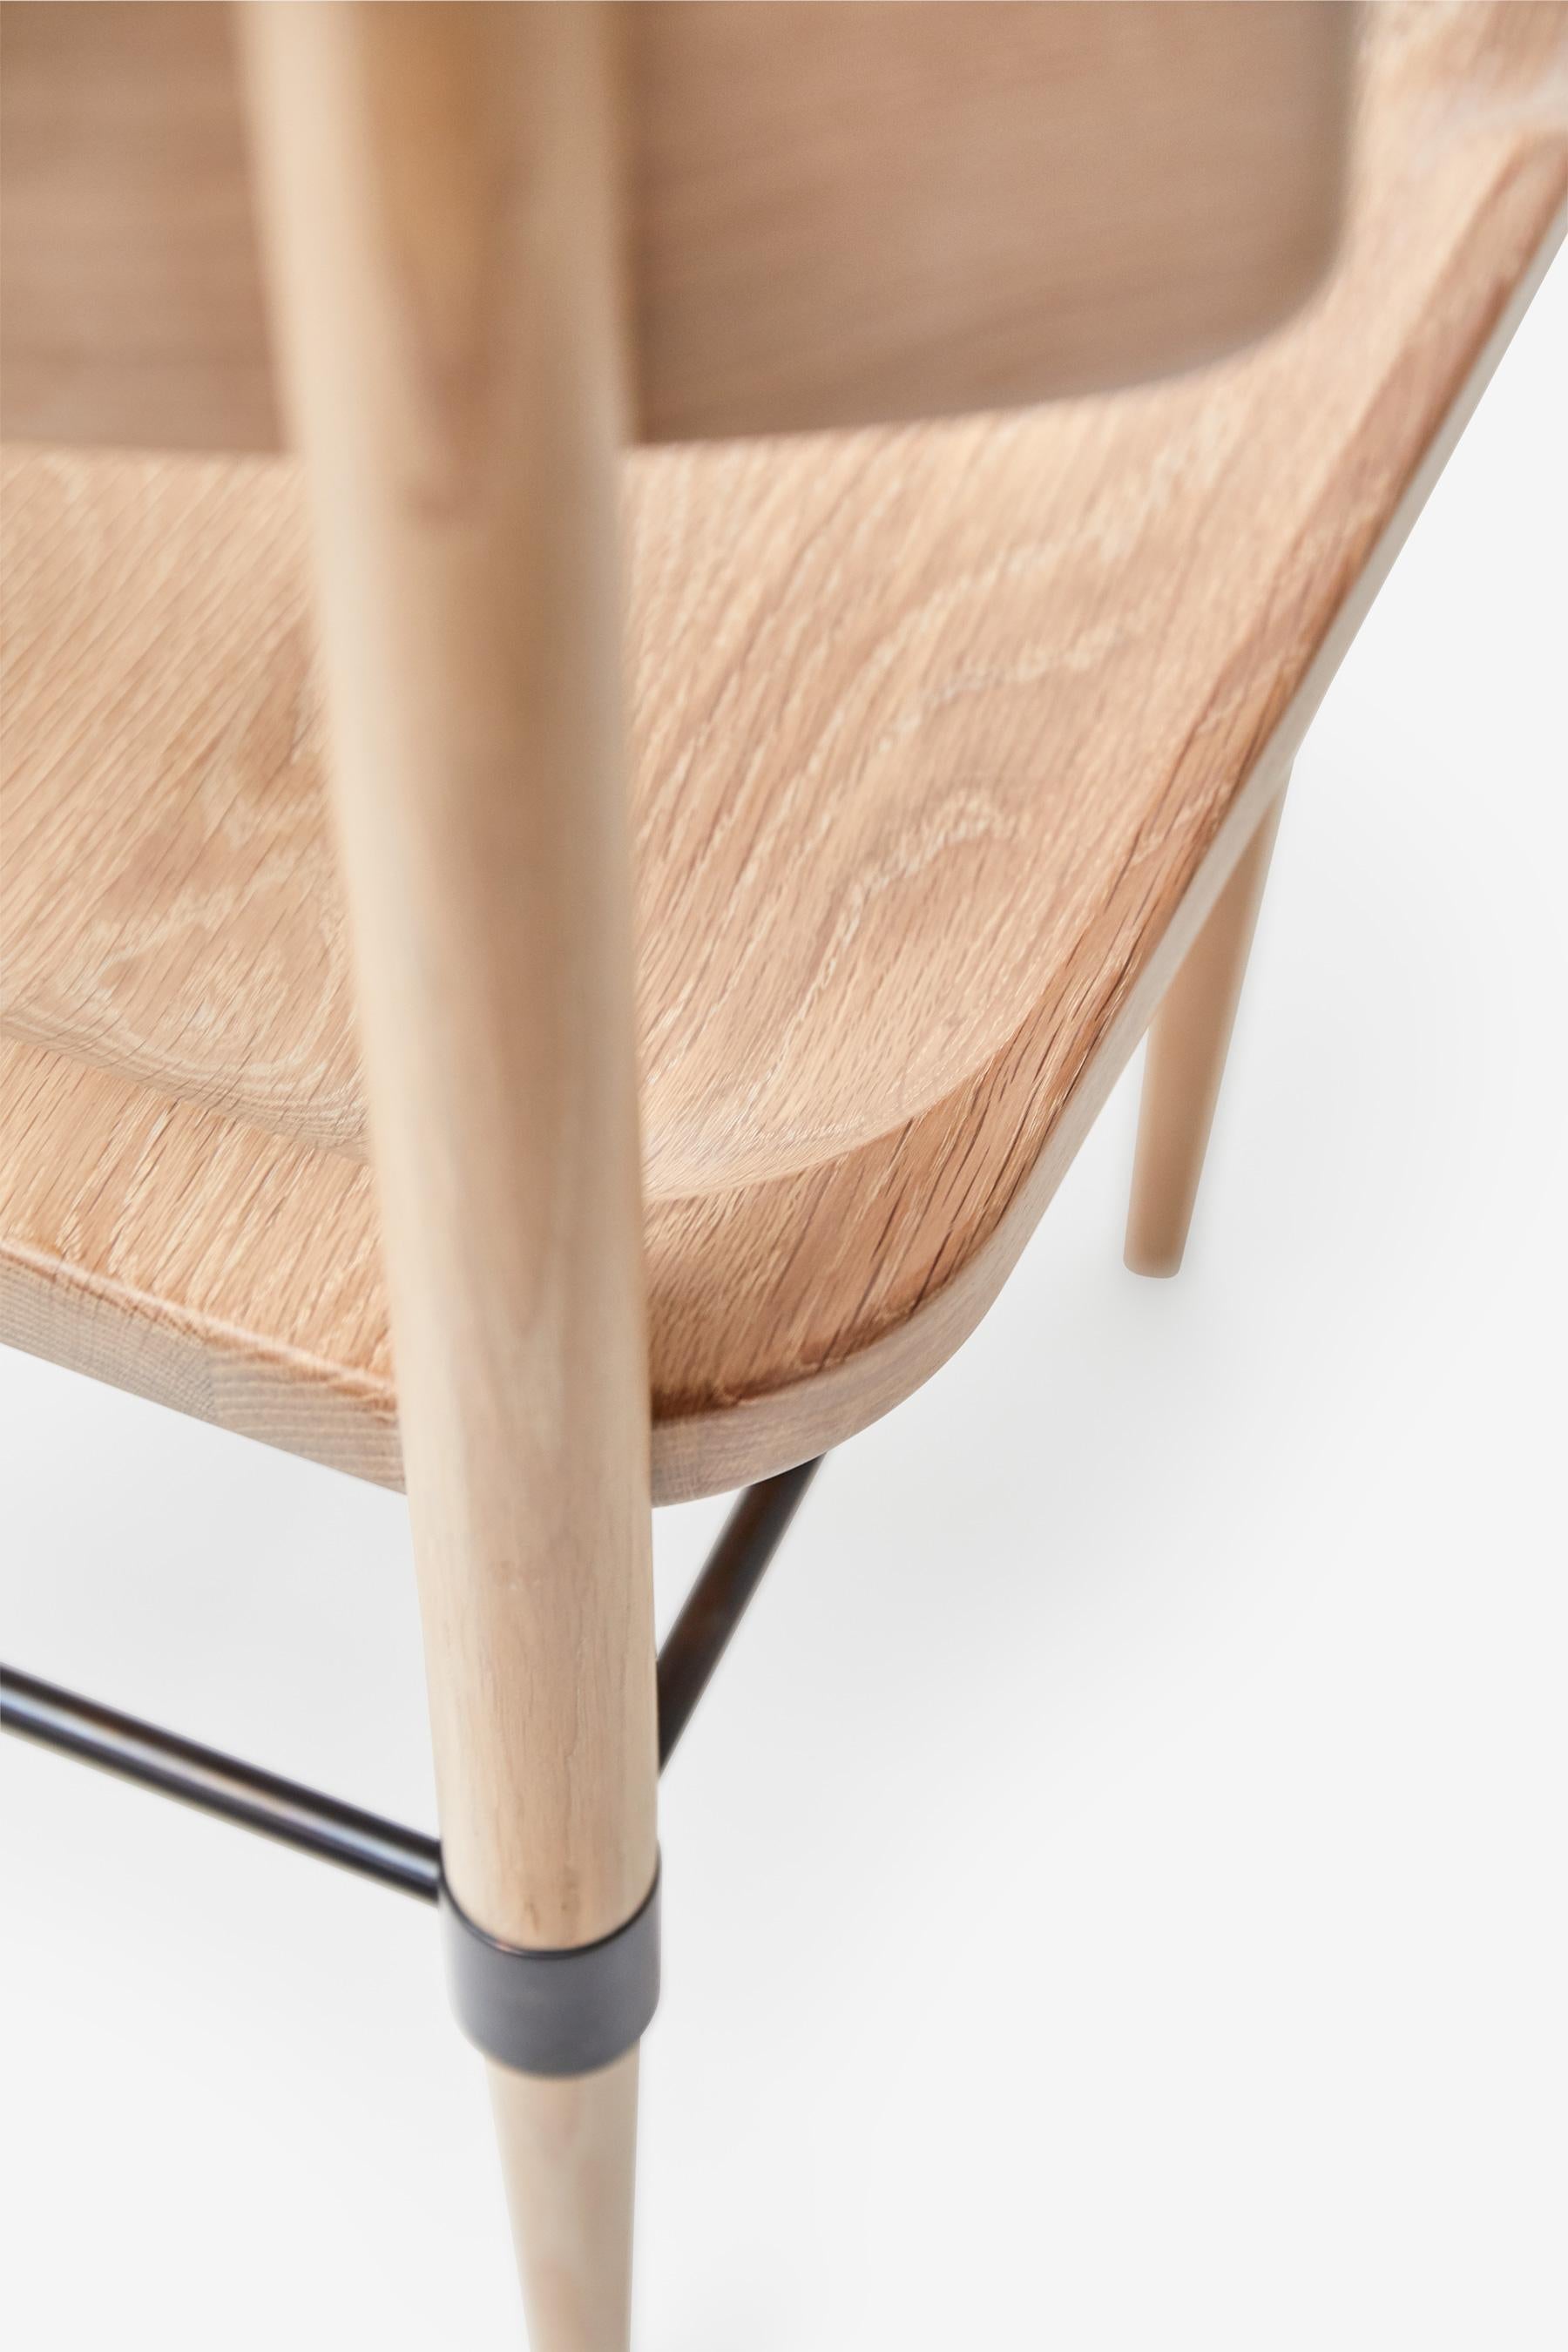 MG101 Dining chair in light oak by Malte Gormsen Design by Space Copenhagen For Sale 3